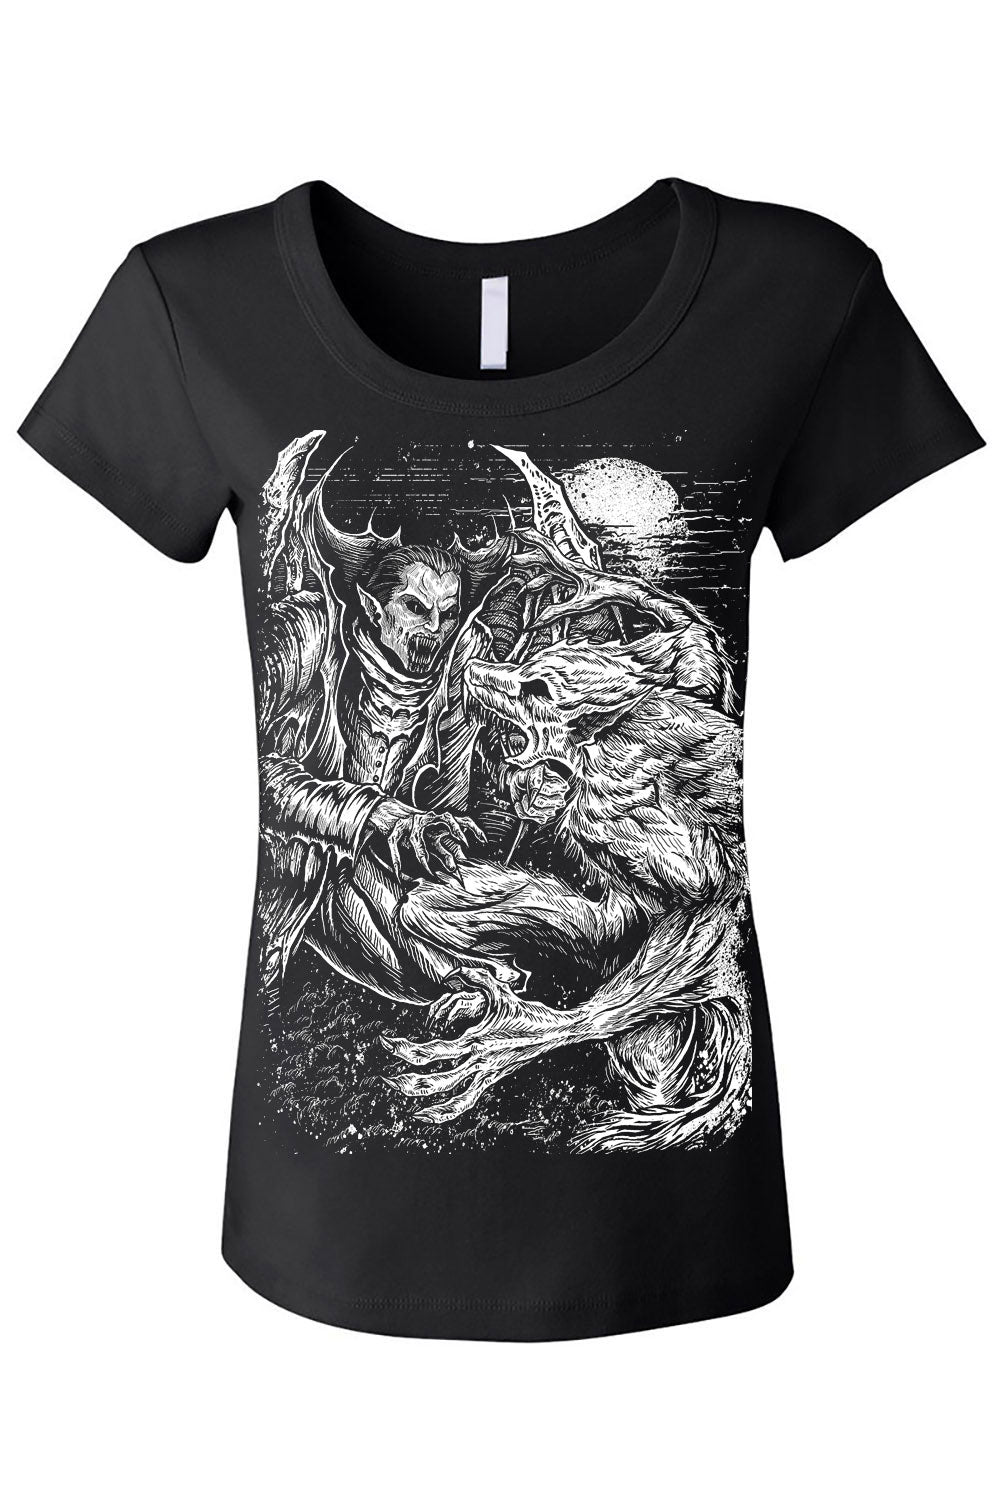 monster horror womens shirt